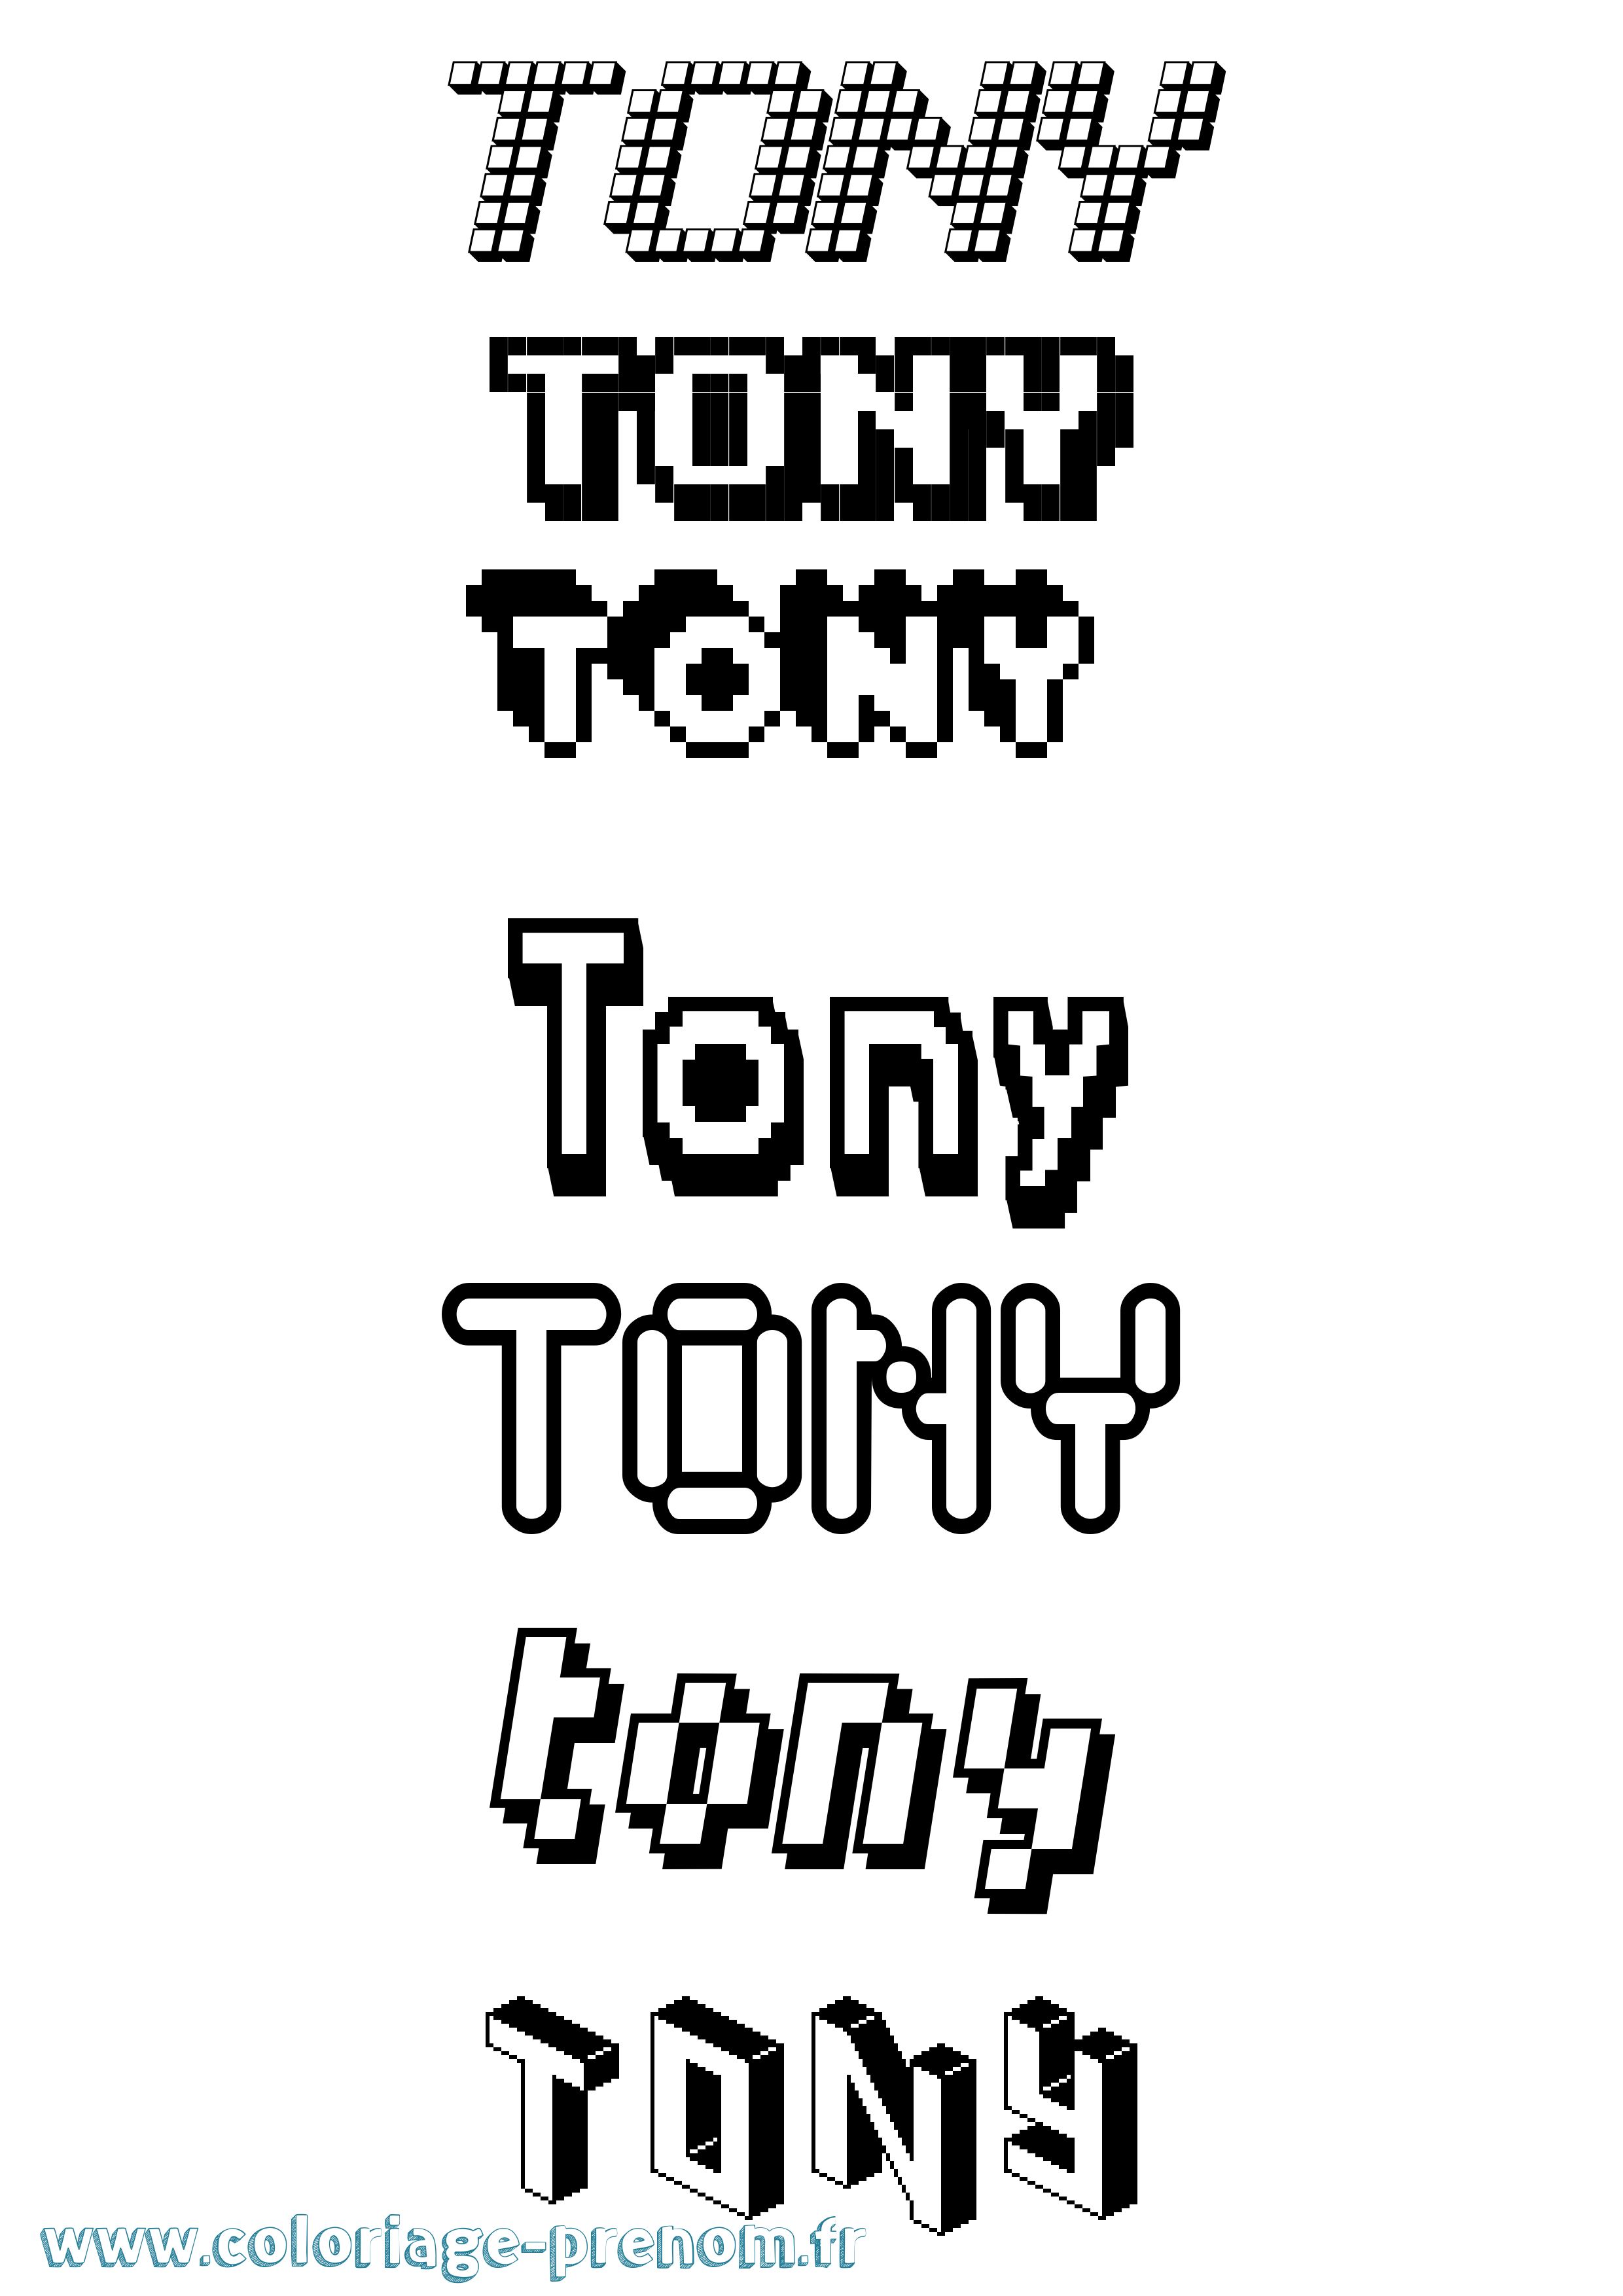 Coloriage prénom Tony